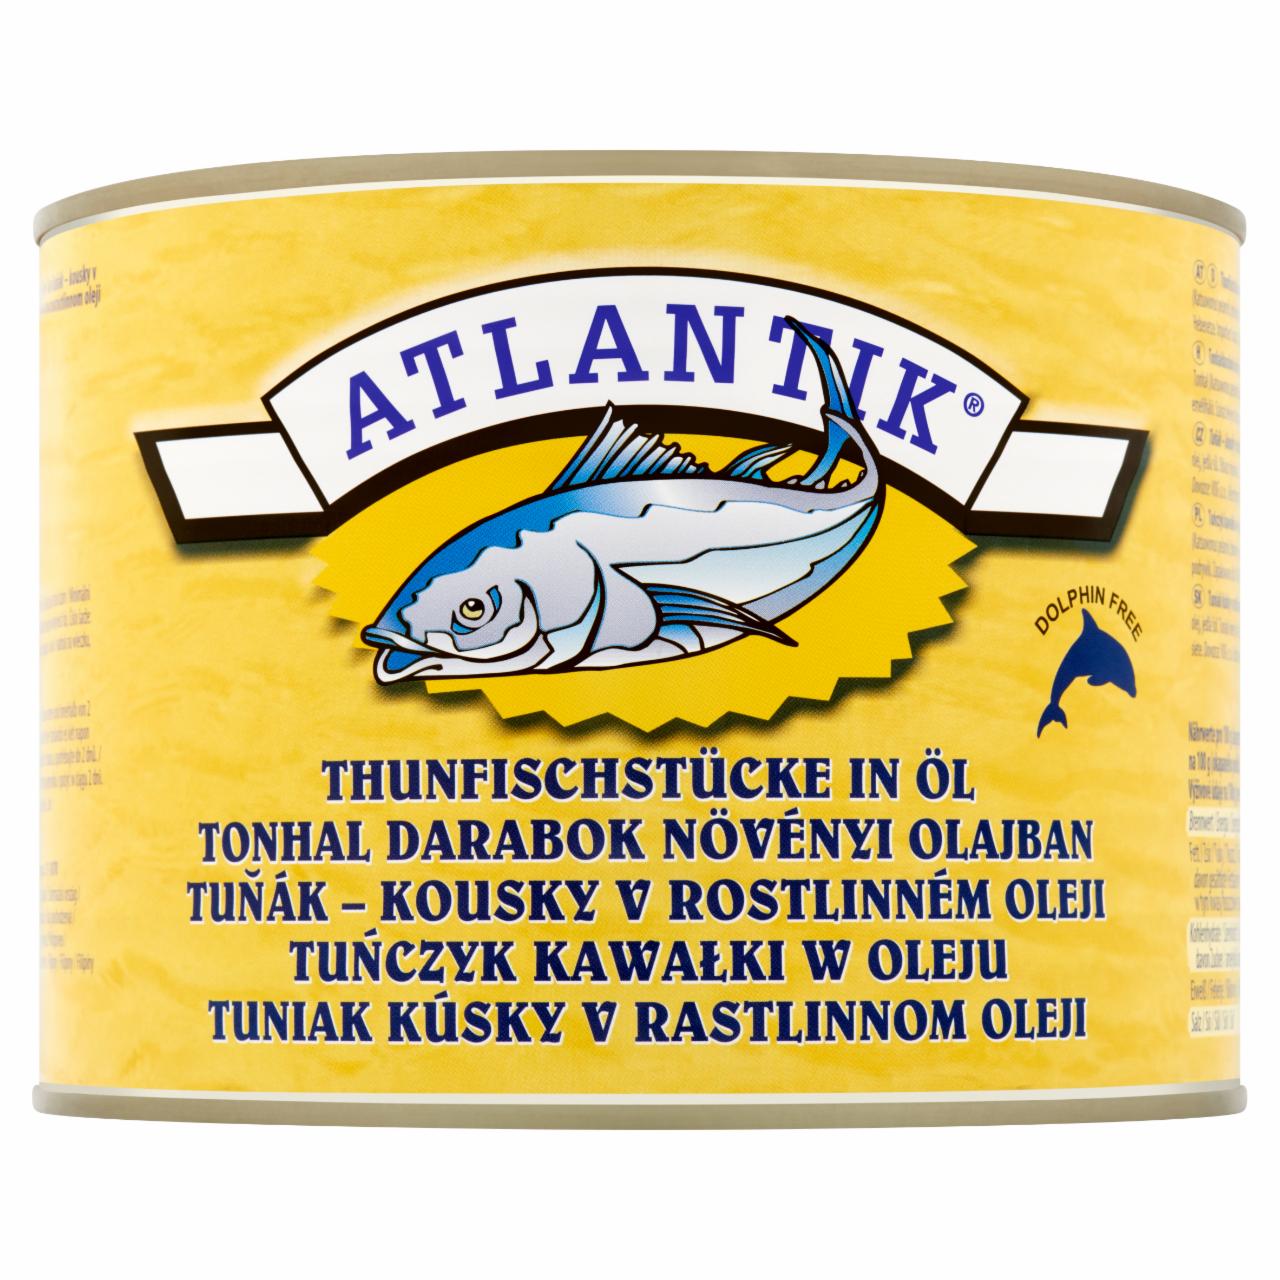 Képek - Atlantik tonhal darabok növényi olajban 1705 g